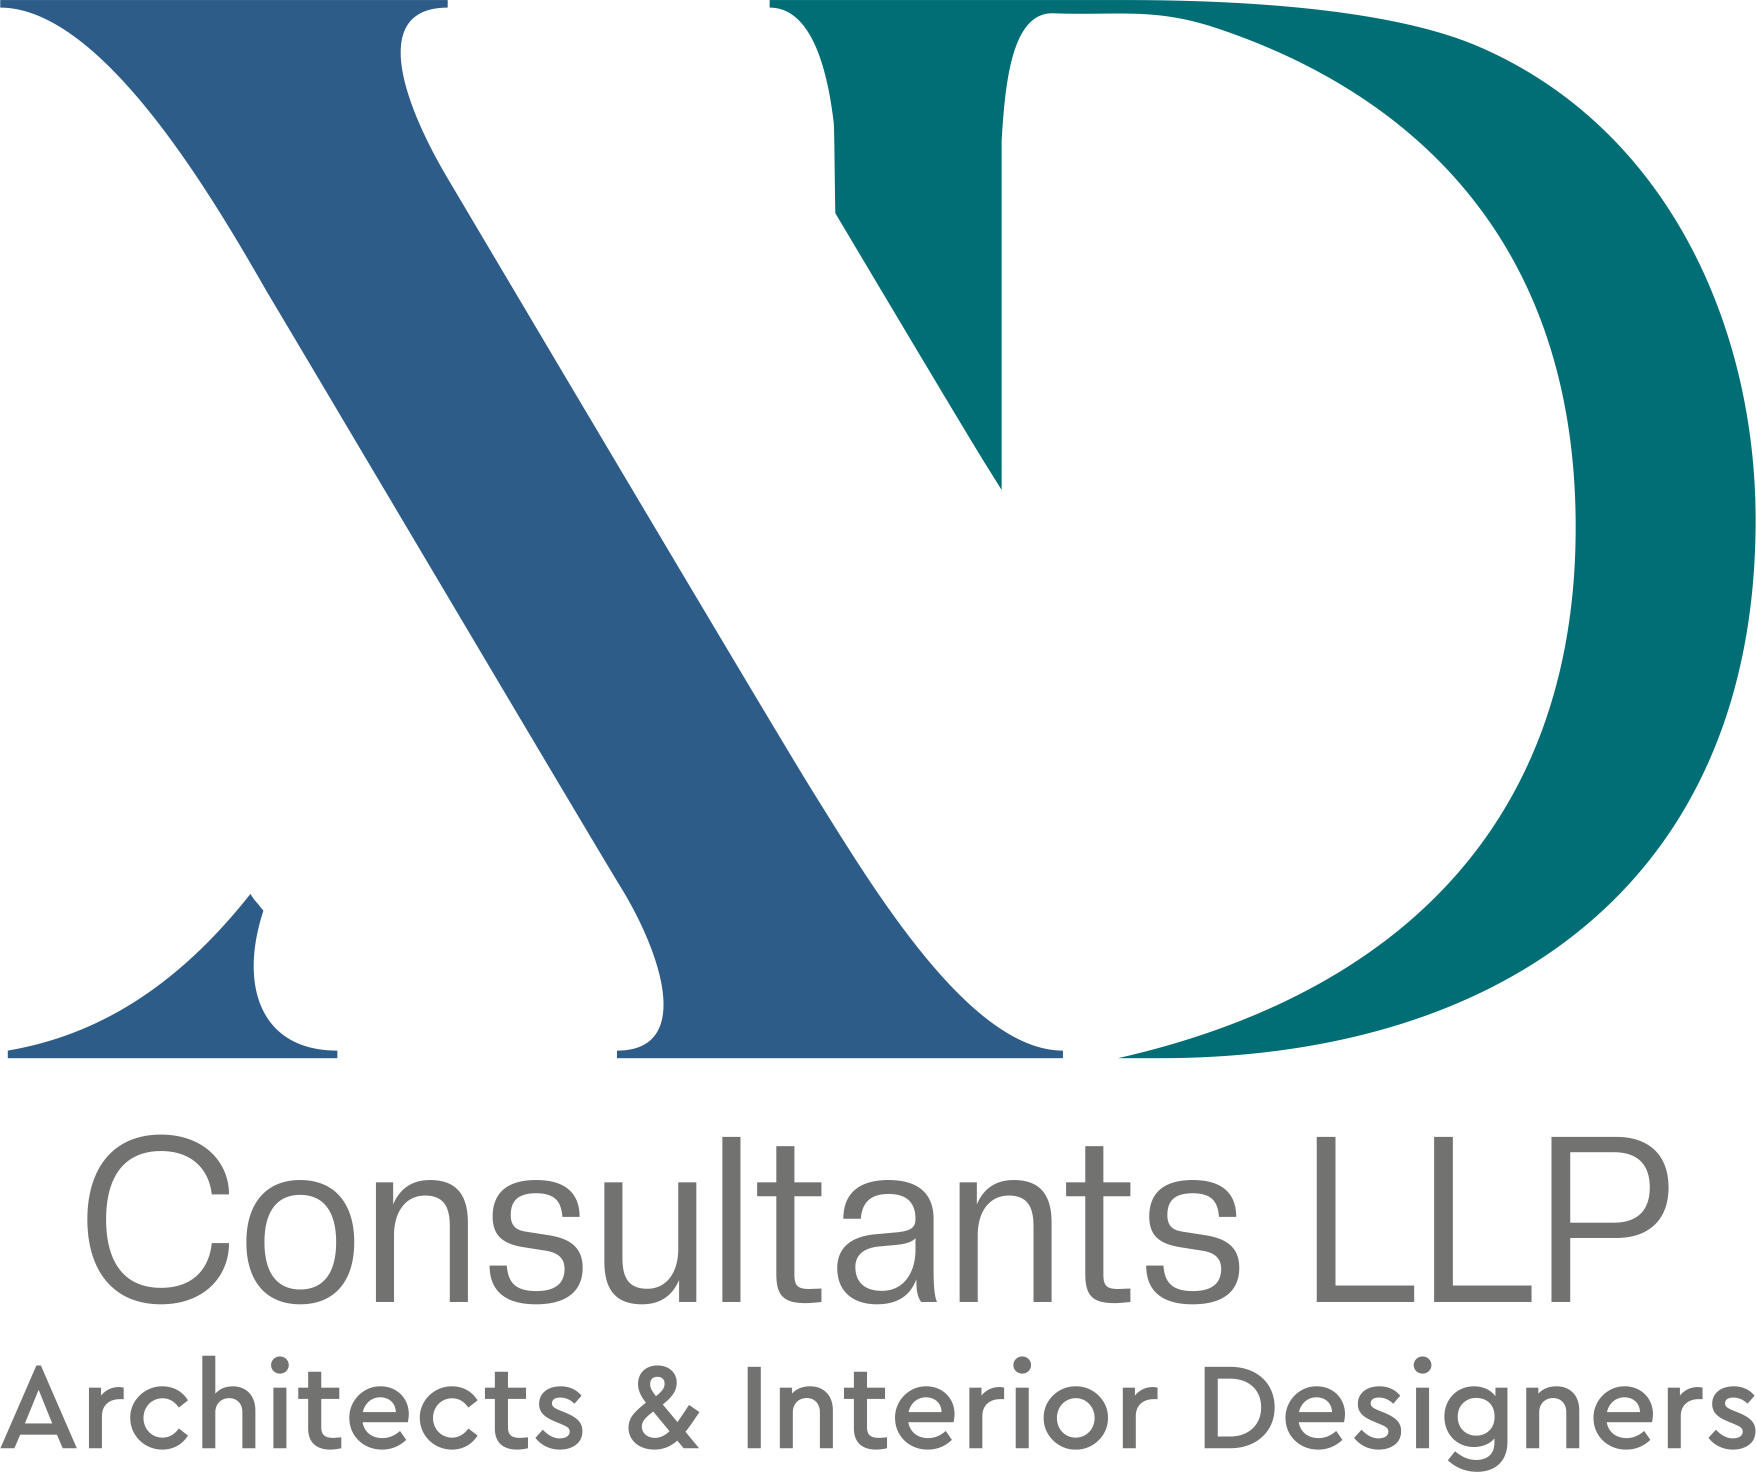 Xquisite Design Consultants LLP